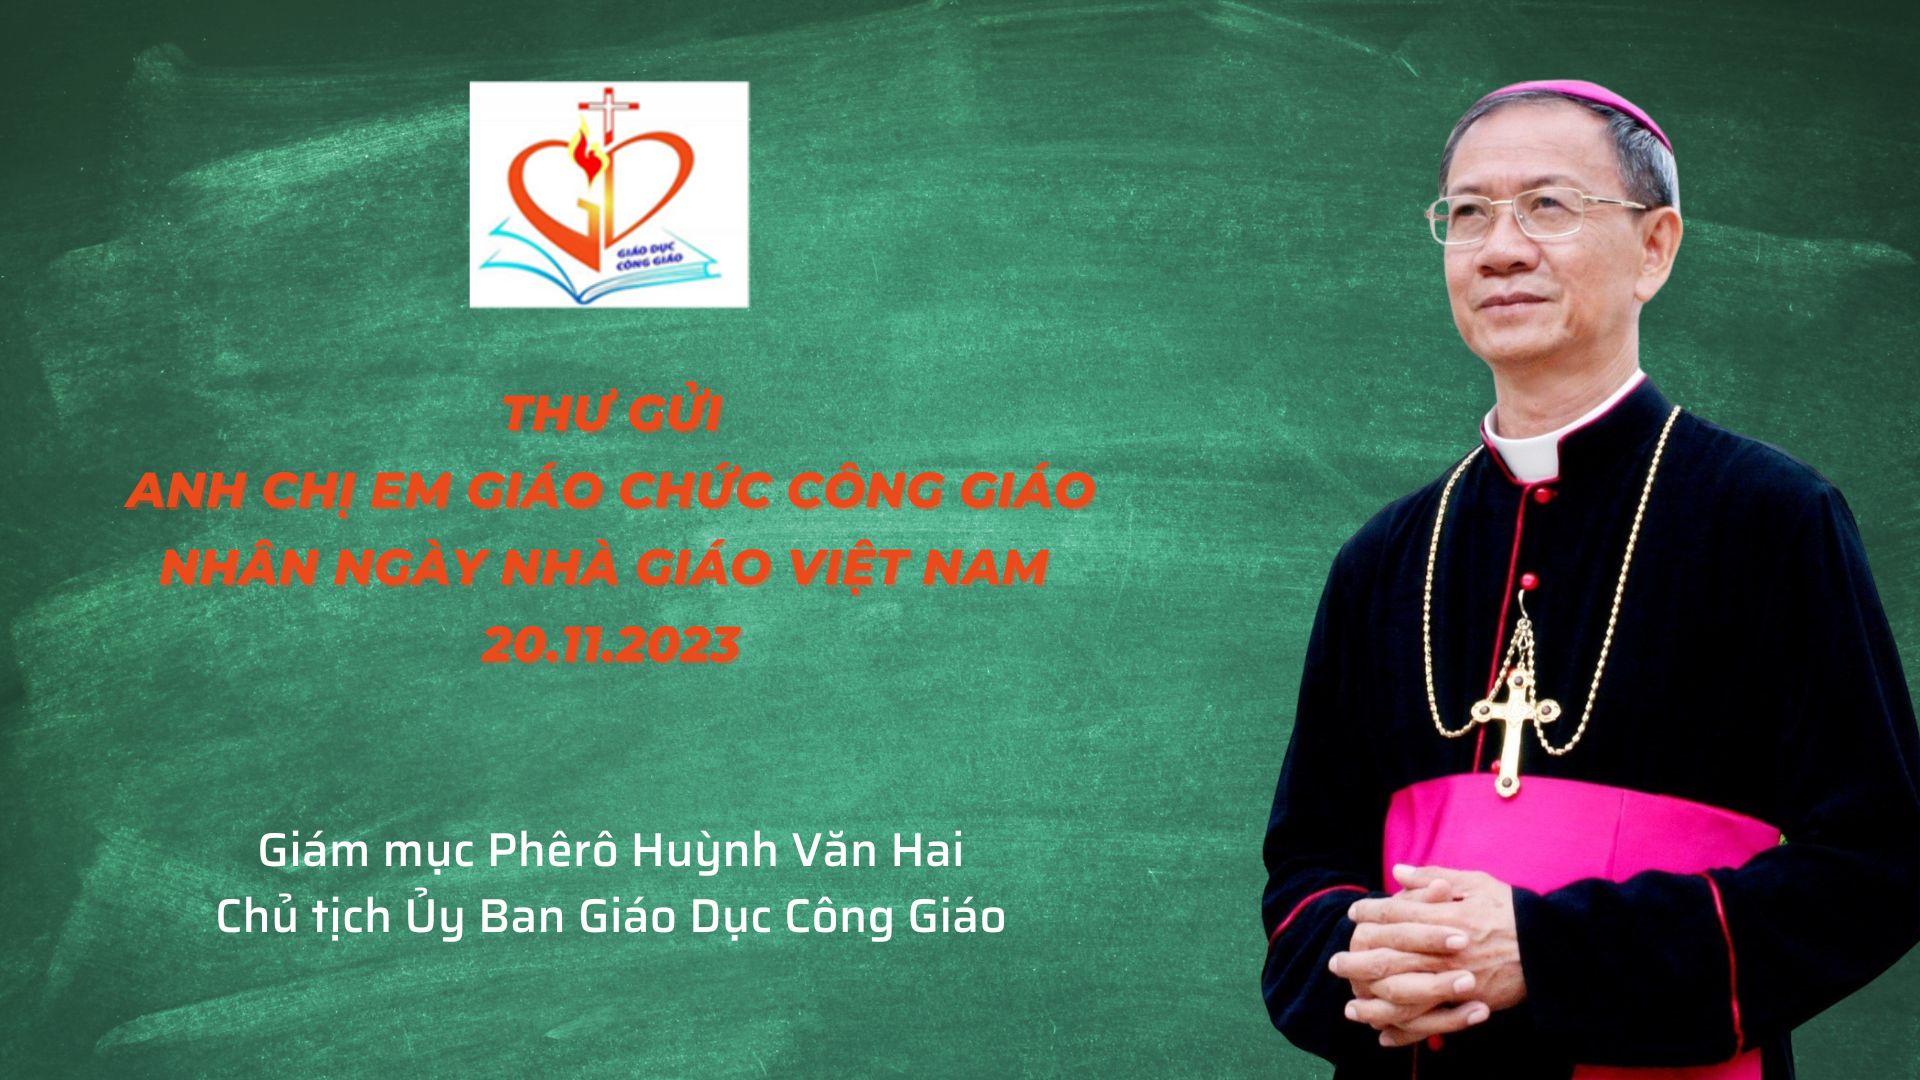 Ủy Ban Giáo Dục Công Giáo: Thư gửi anh chị em giáo chức Công giáo nhân ngày Nhà giáo Việt Nam 20.11.2023